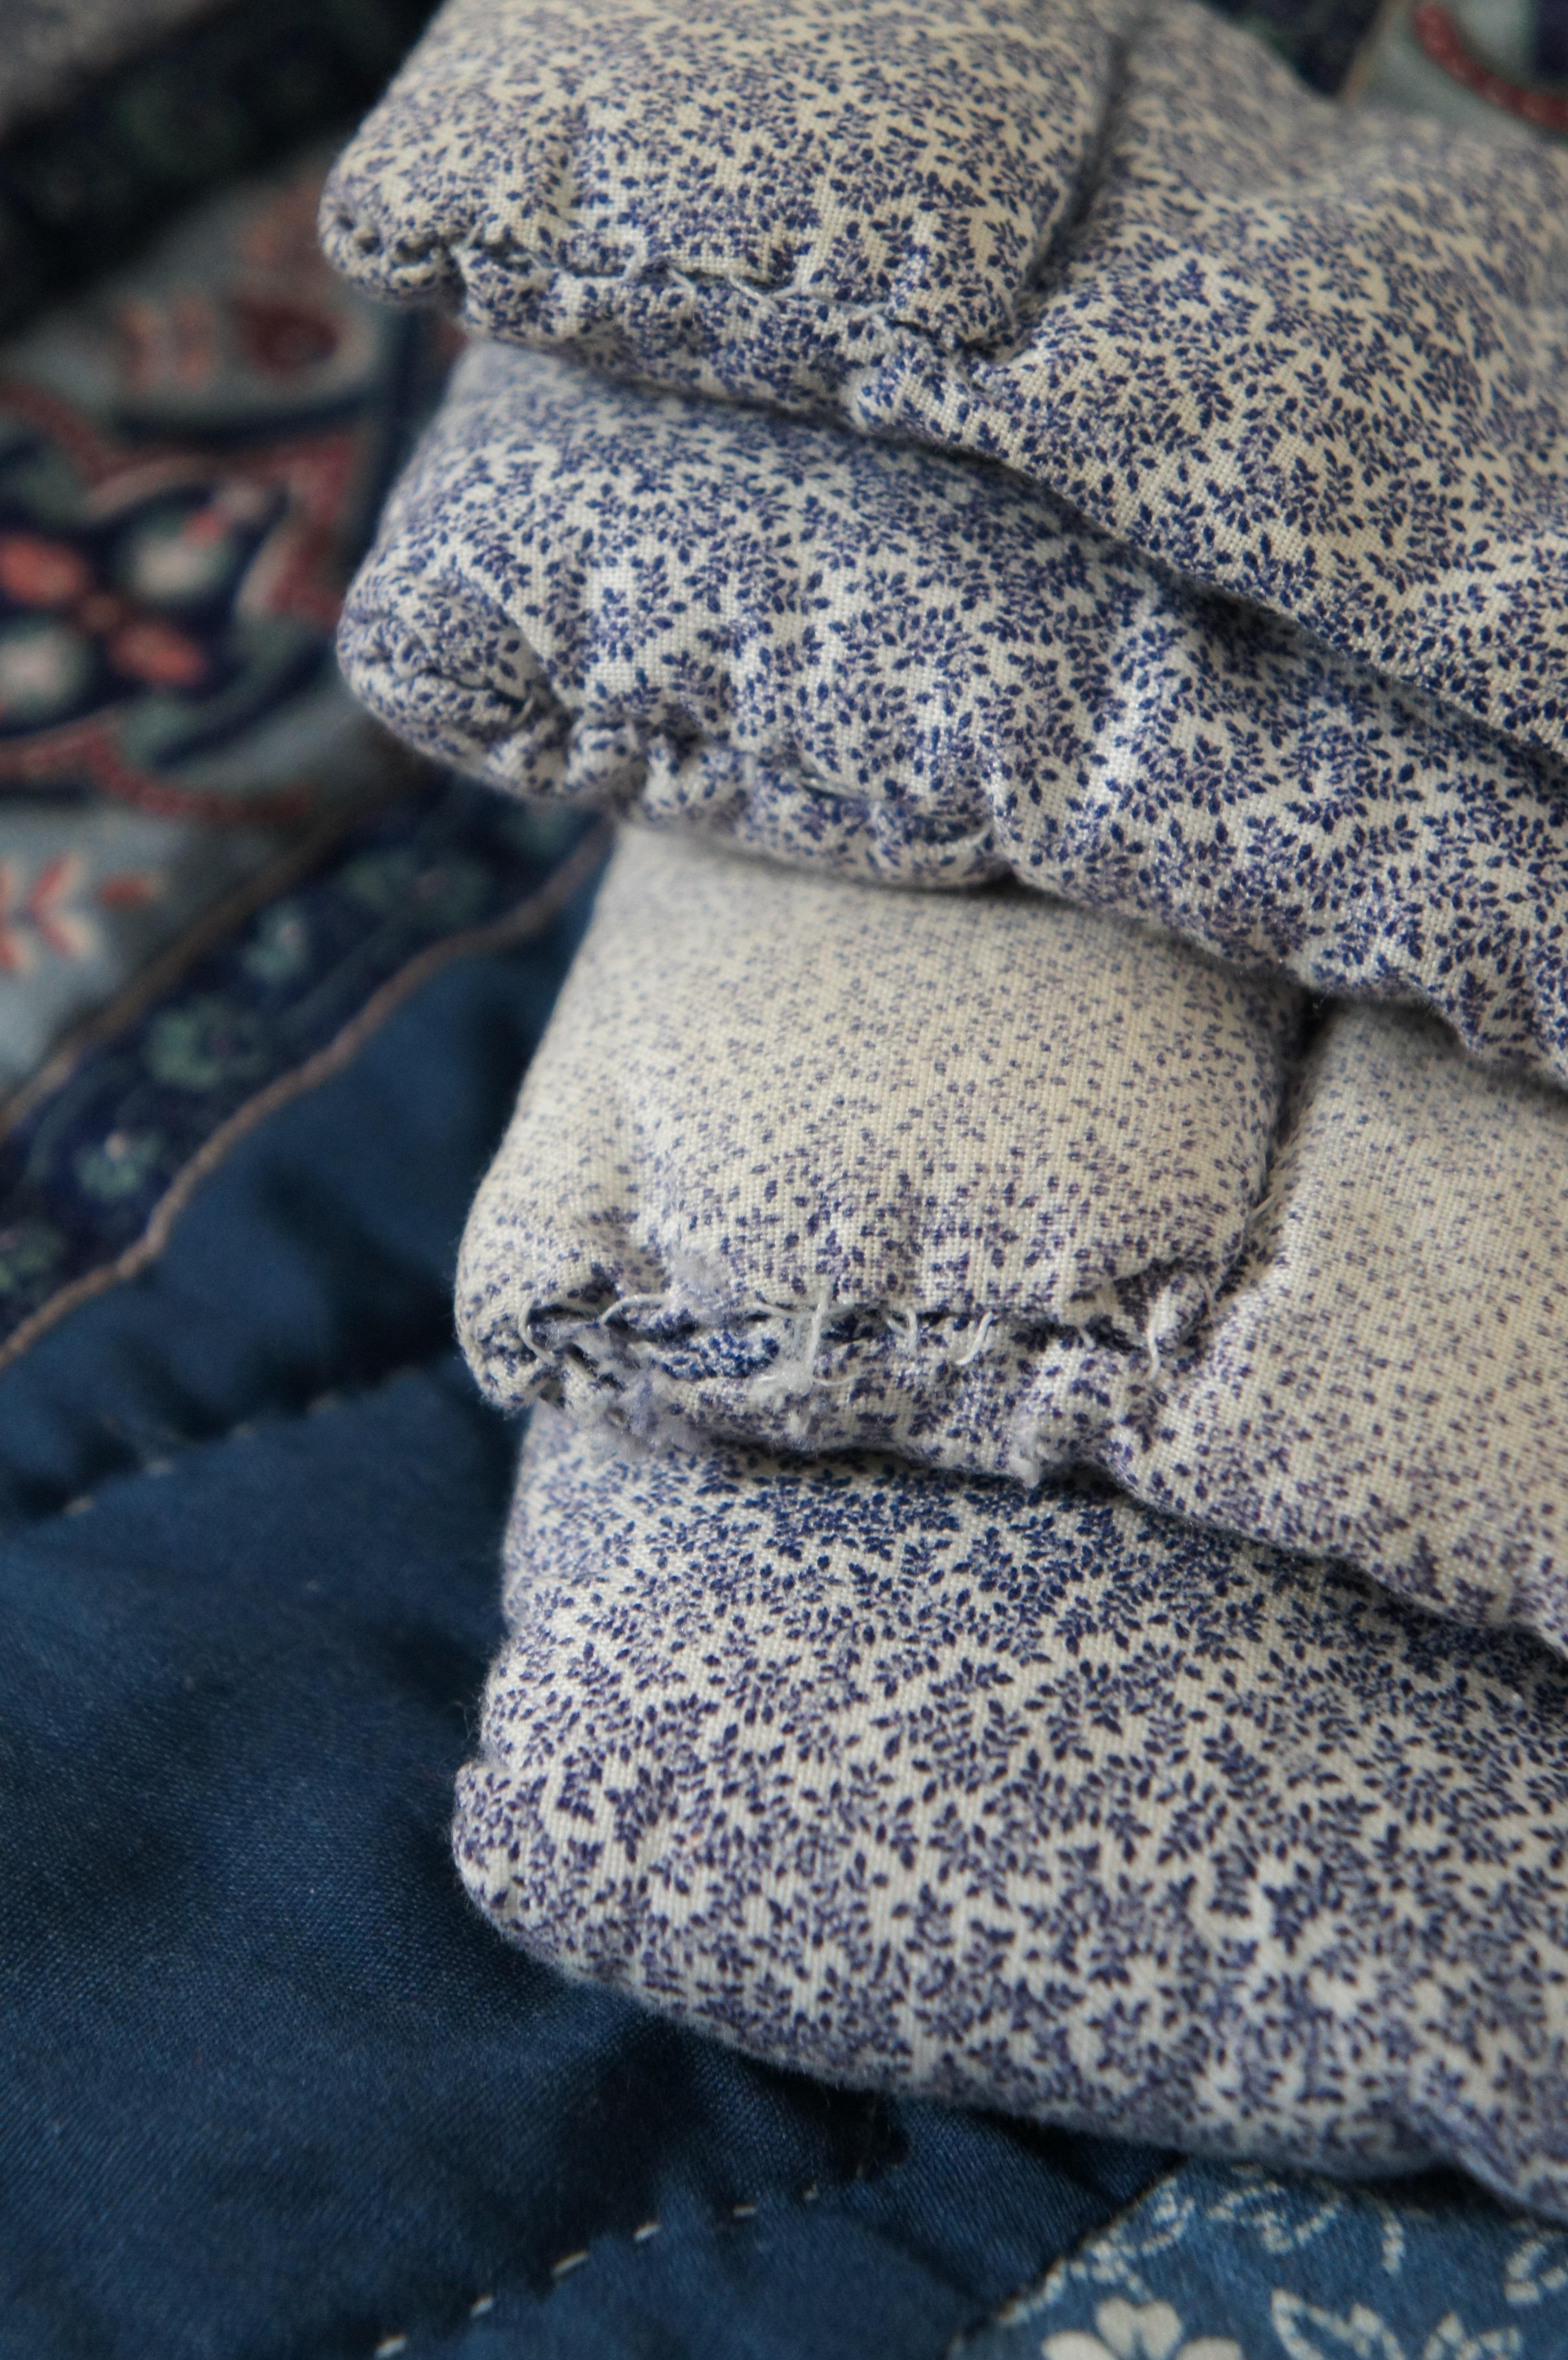 Vintage Log Cabin Stitched Geometric Floral Quilt Blanket Bedspread 94